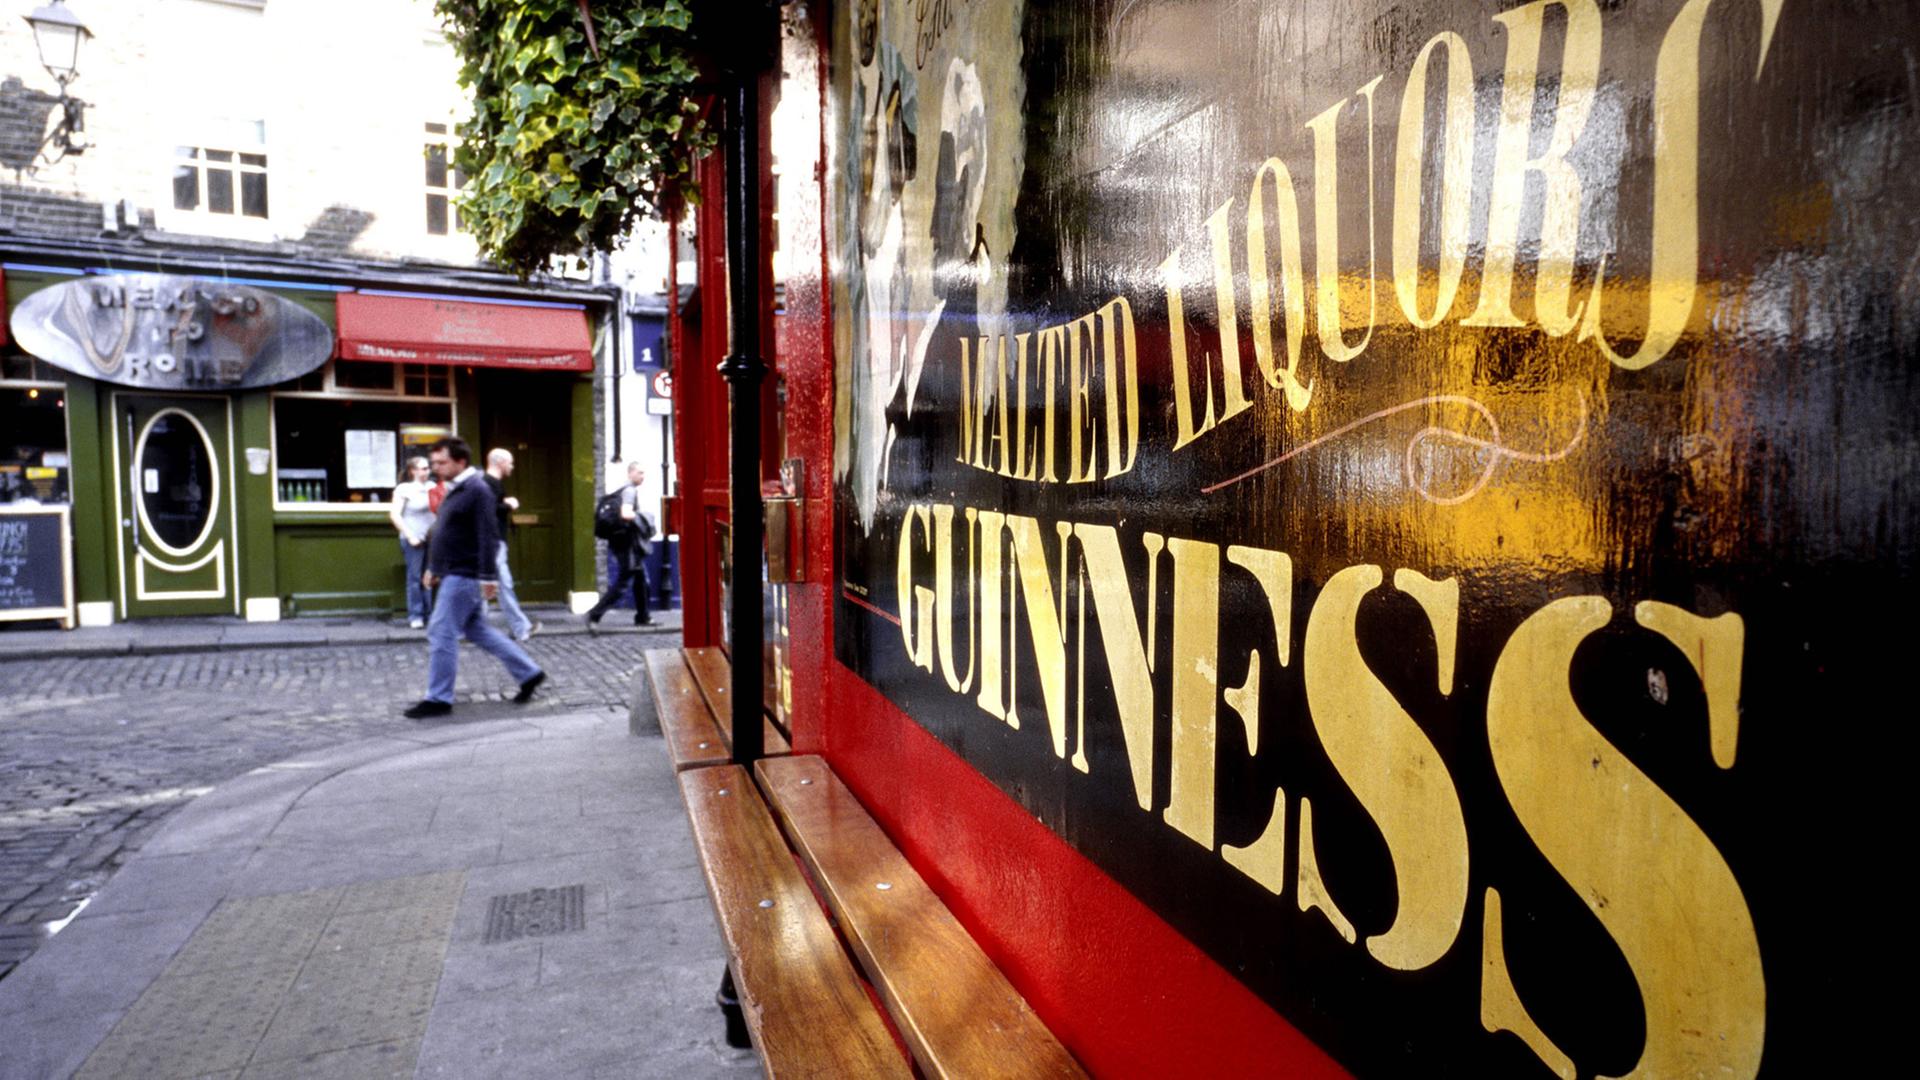 Typisch Dublin: Eine Guiness Kneipe im Stadtteil Temple Bar in Dublin